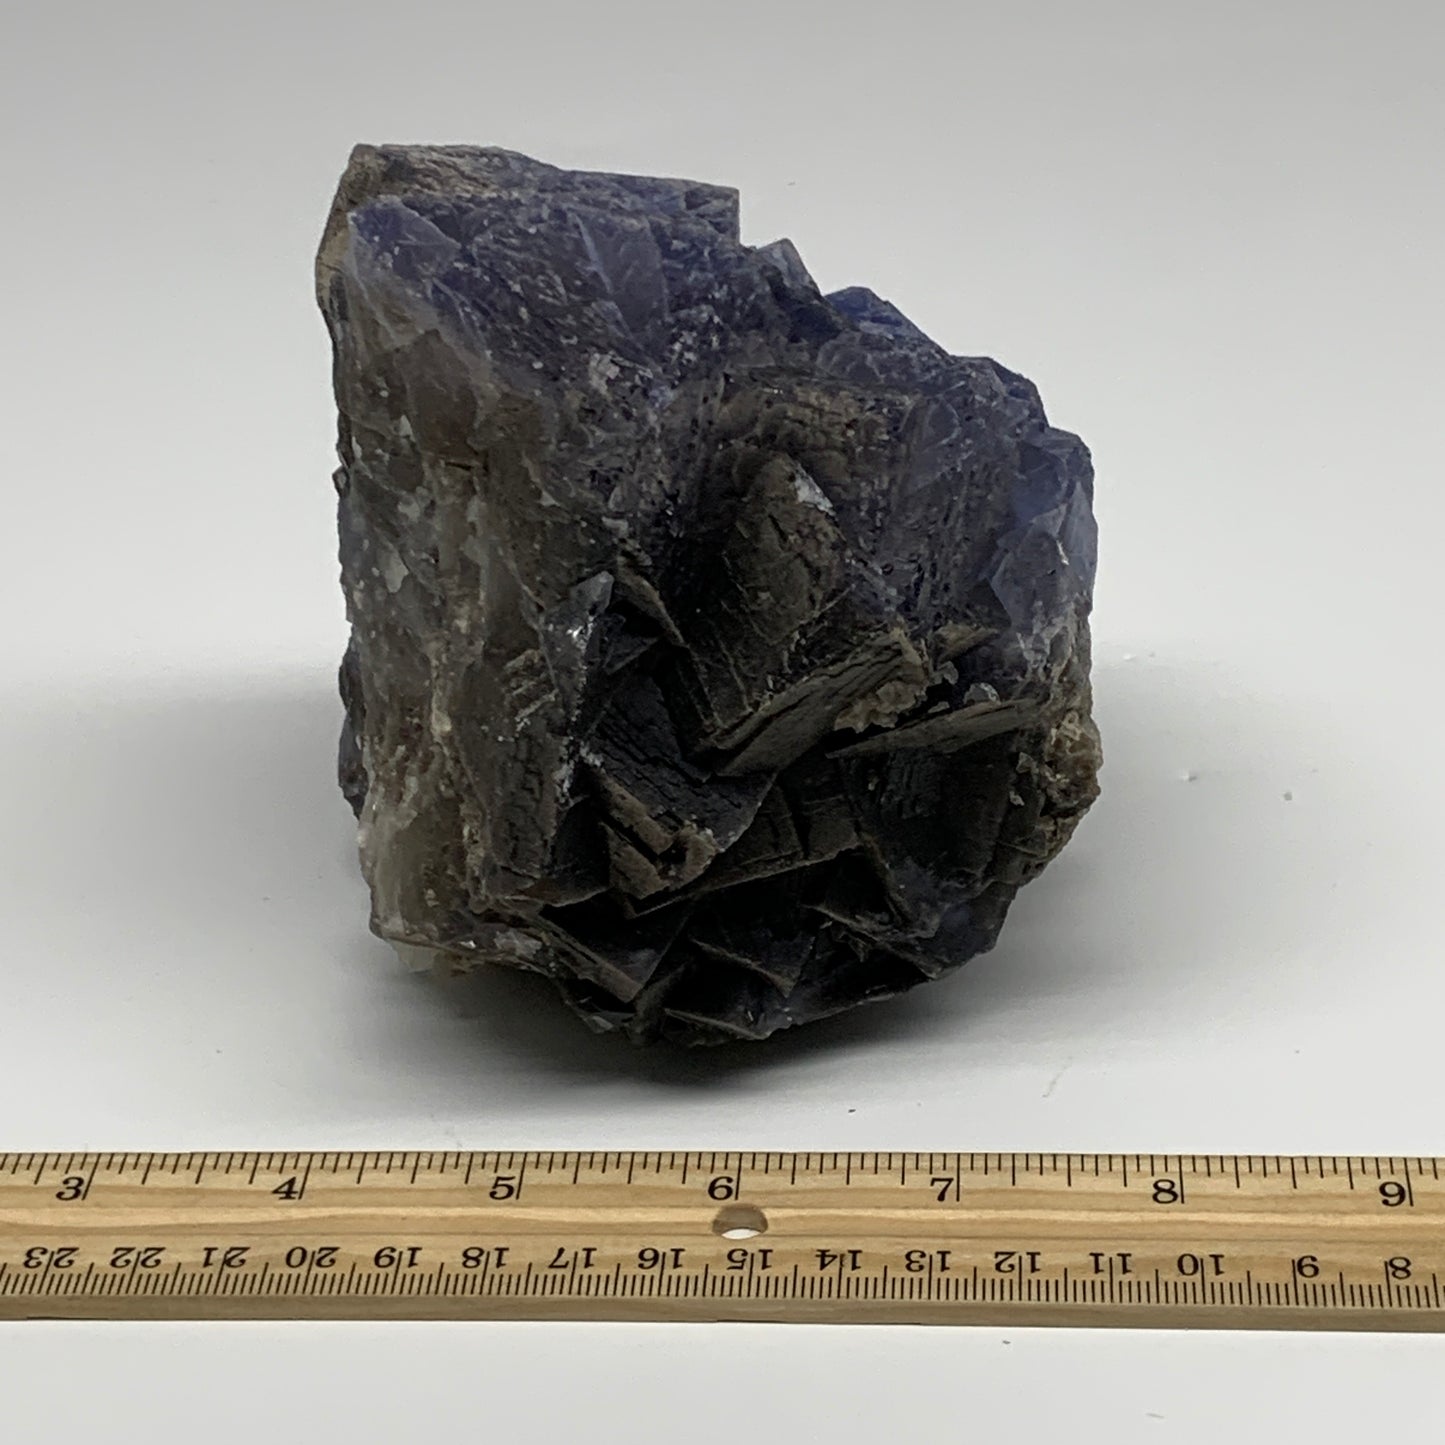 3.1 lbs, 3.6"x4.4"x3.2", Purple Fluorite Crystal Mineral Specimen @Pakistan, B27